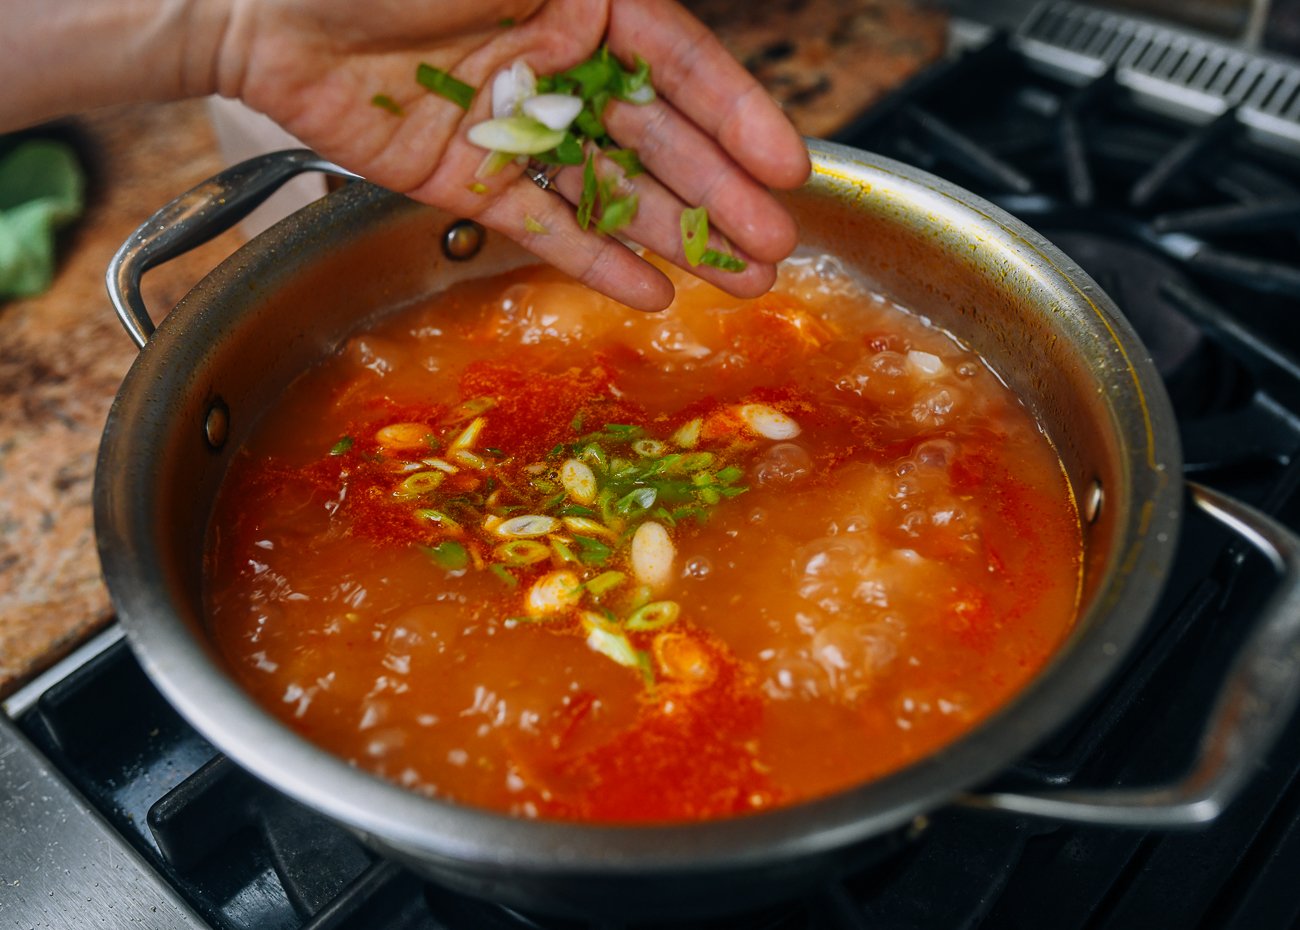 Adding scallions to tomato potato soup